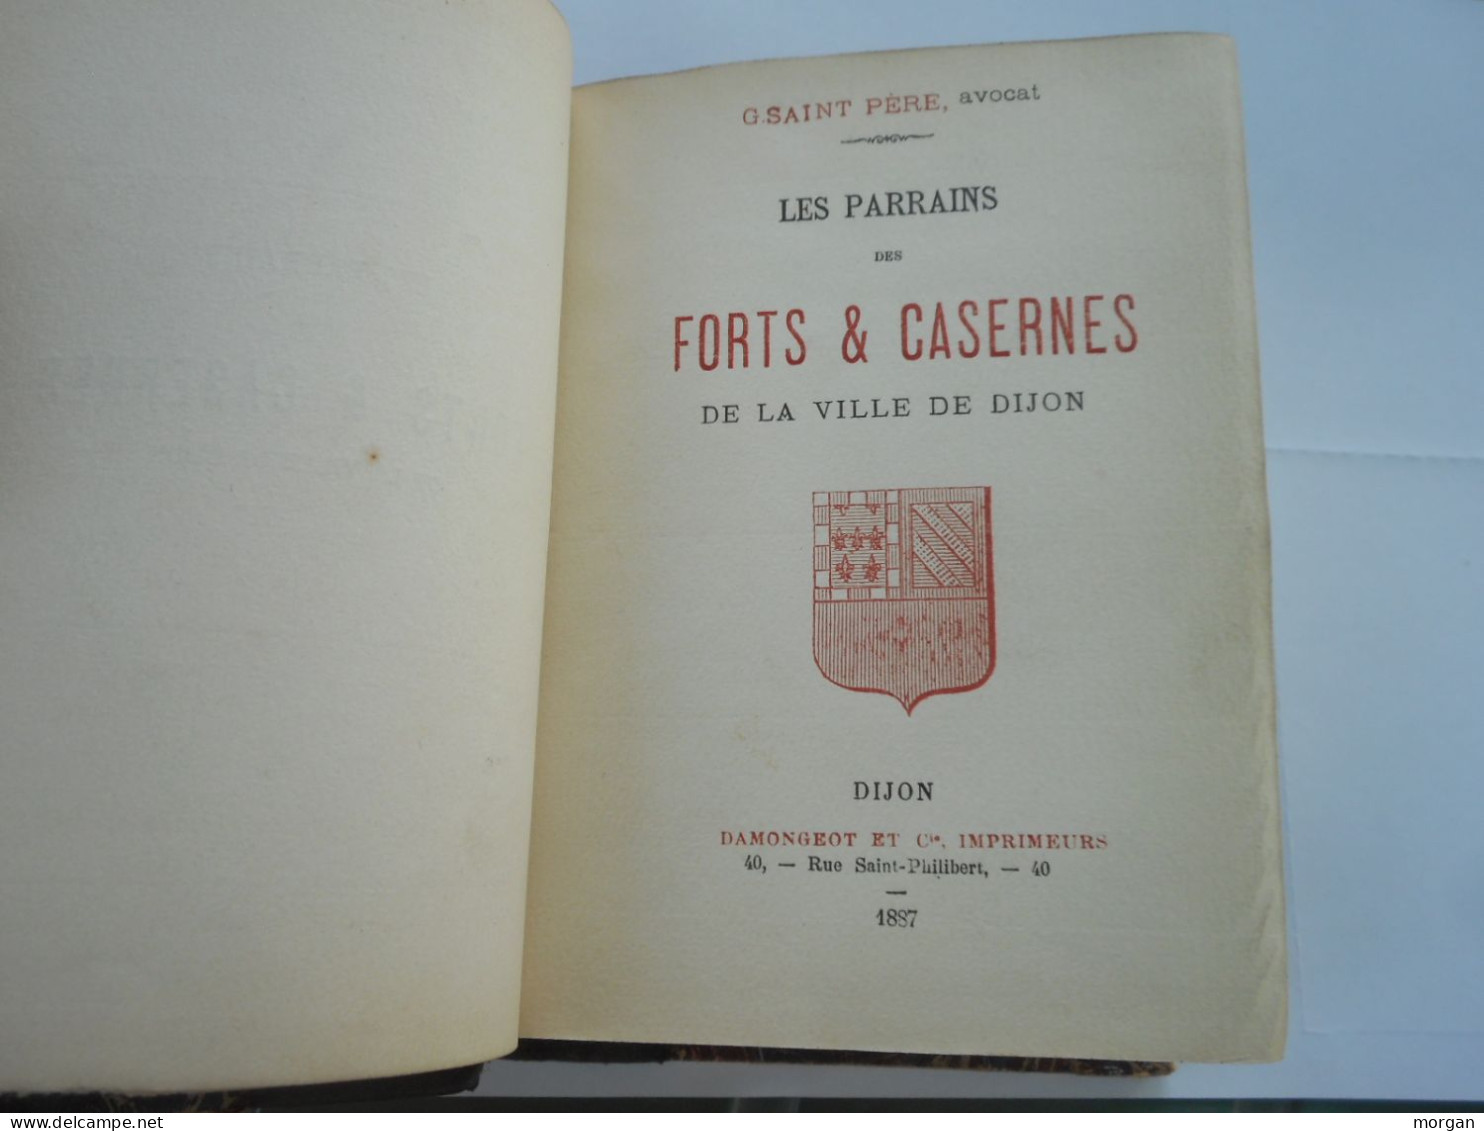 DIJON, 1887, LES PARRAINS DES FORTS ET CASERNES DE DIJON, 1887, G. SAINT PERE - Bourgogne